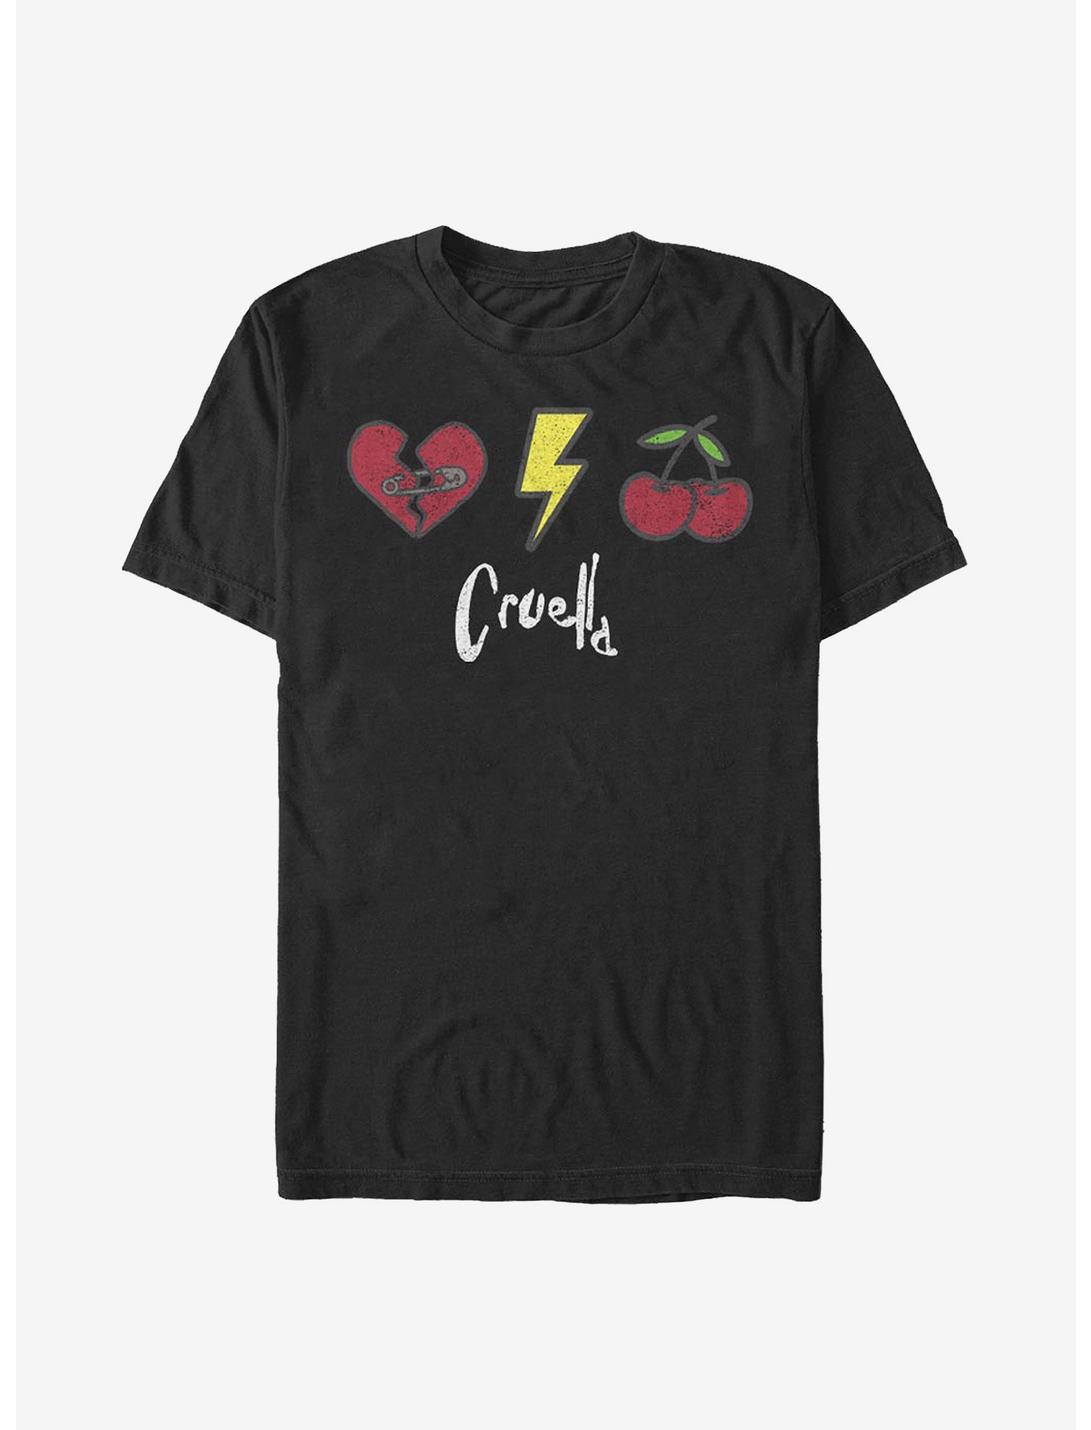 Disney Cruella Icons T-Shirt, BLACK, hi-res